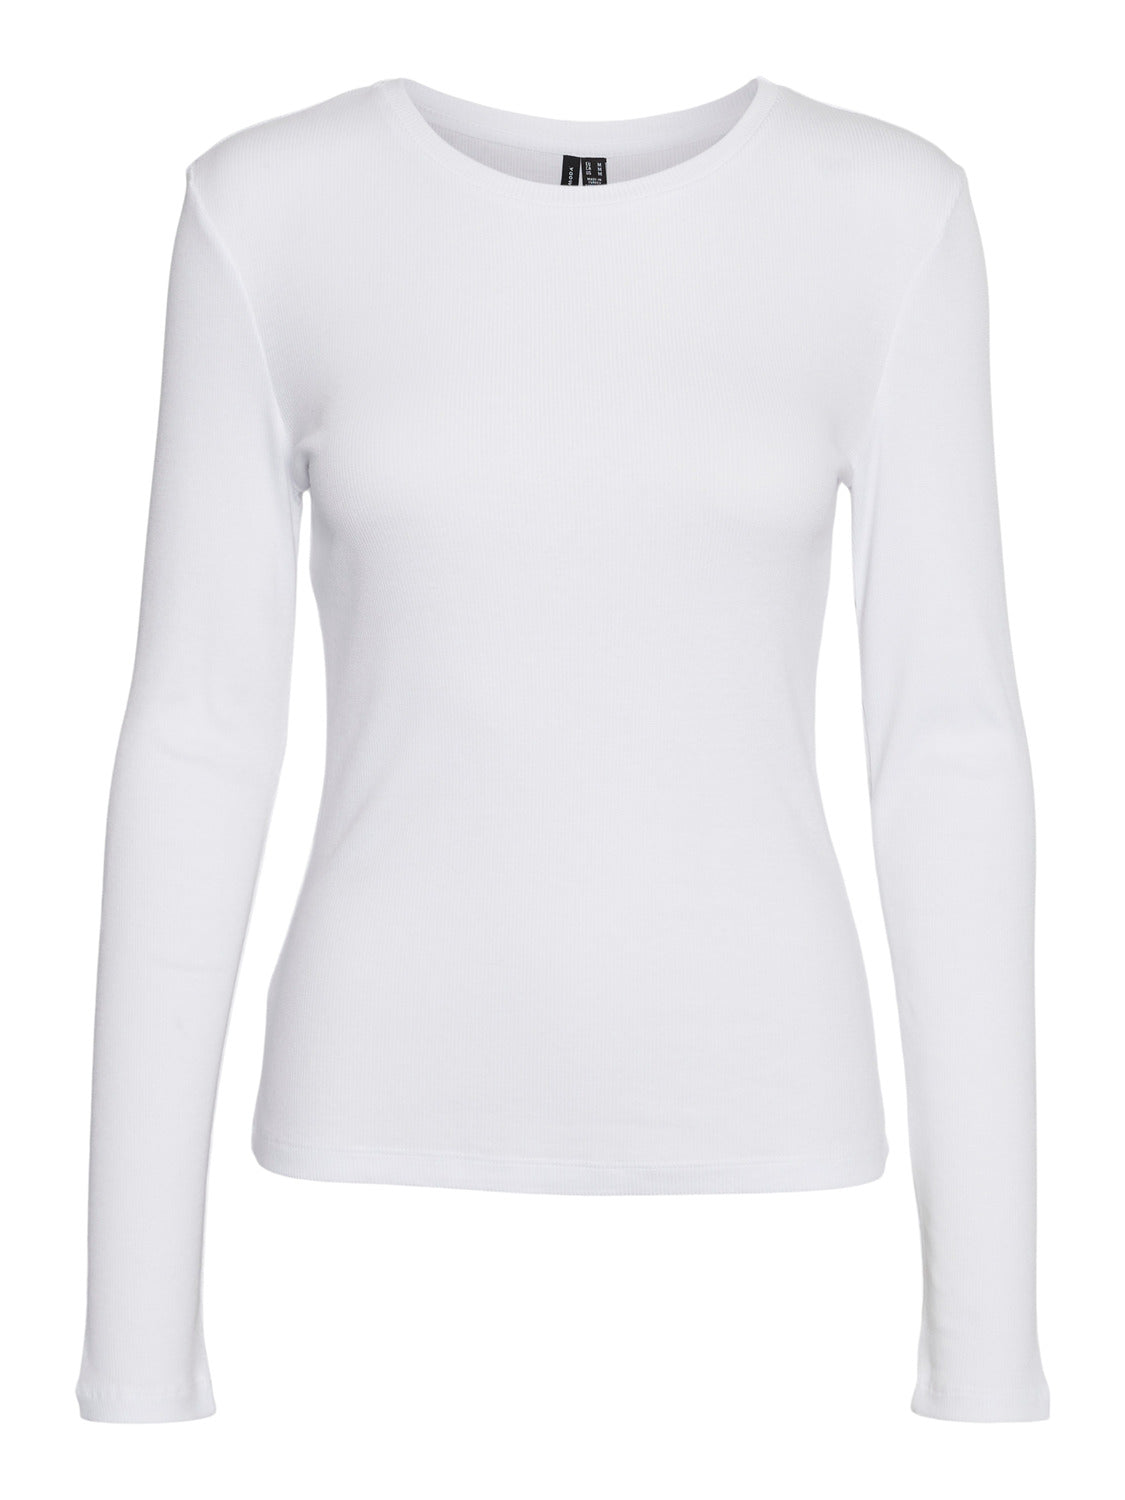 VMROMA T-Shirt - Bright White